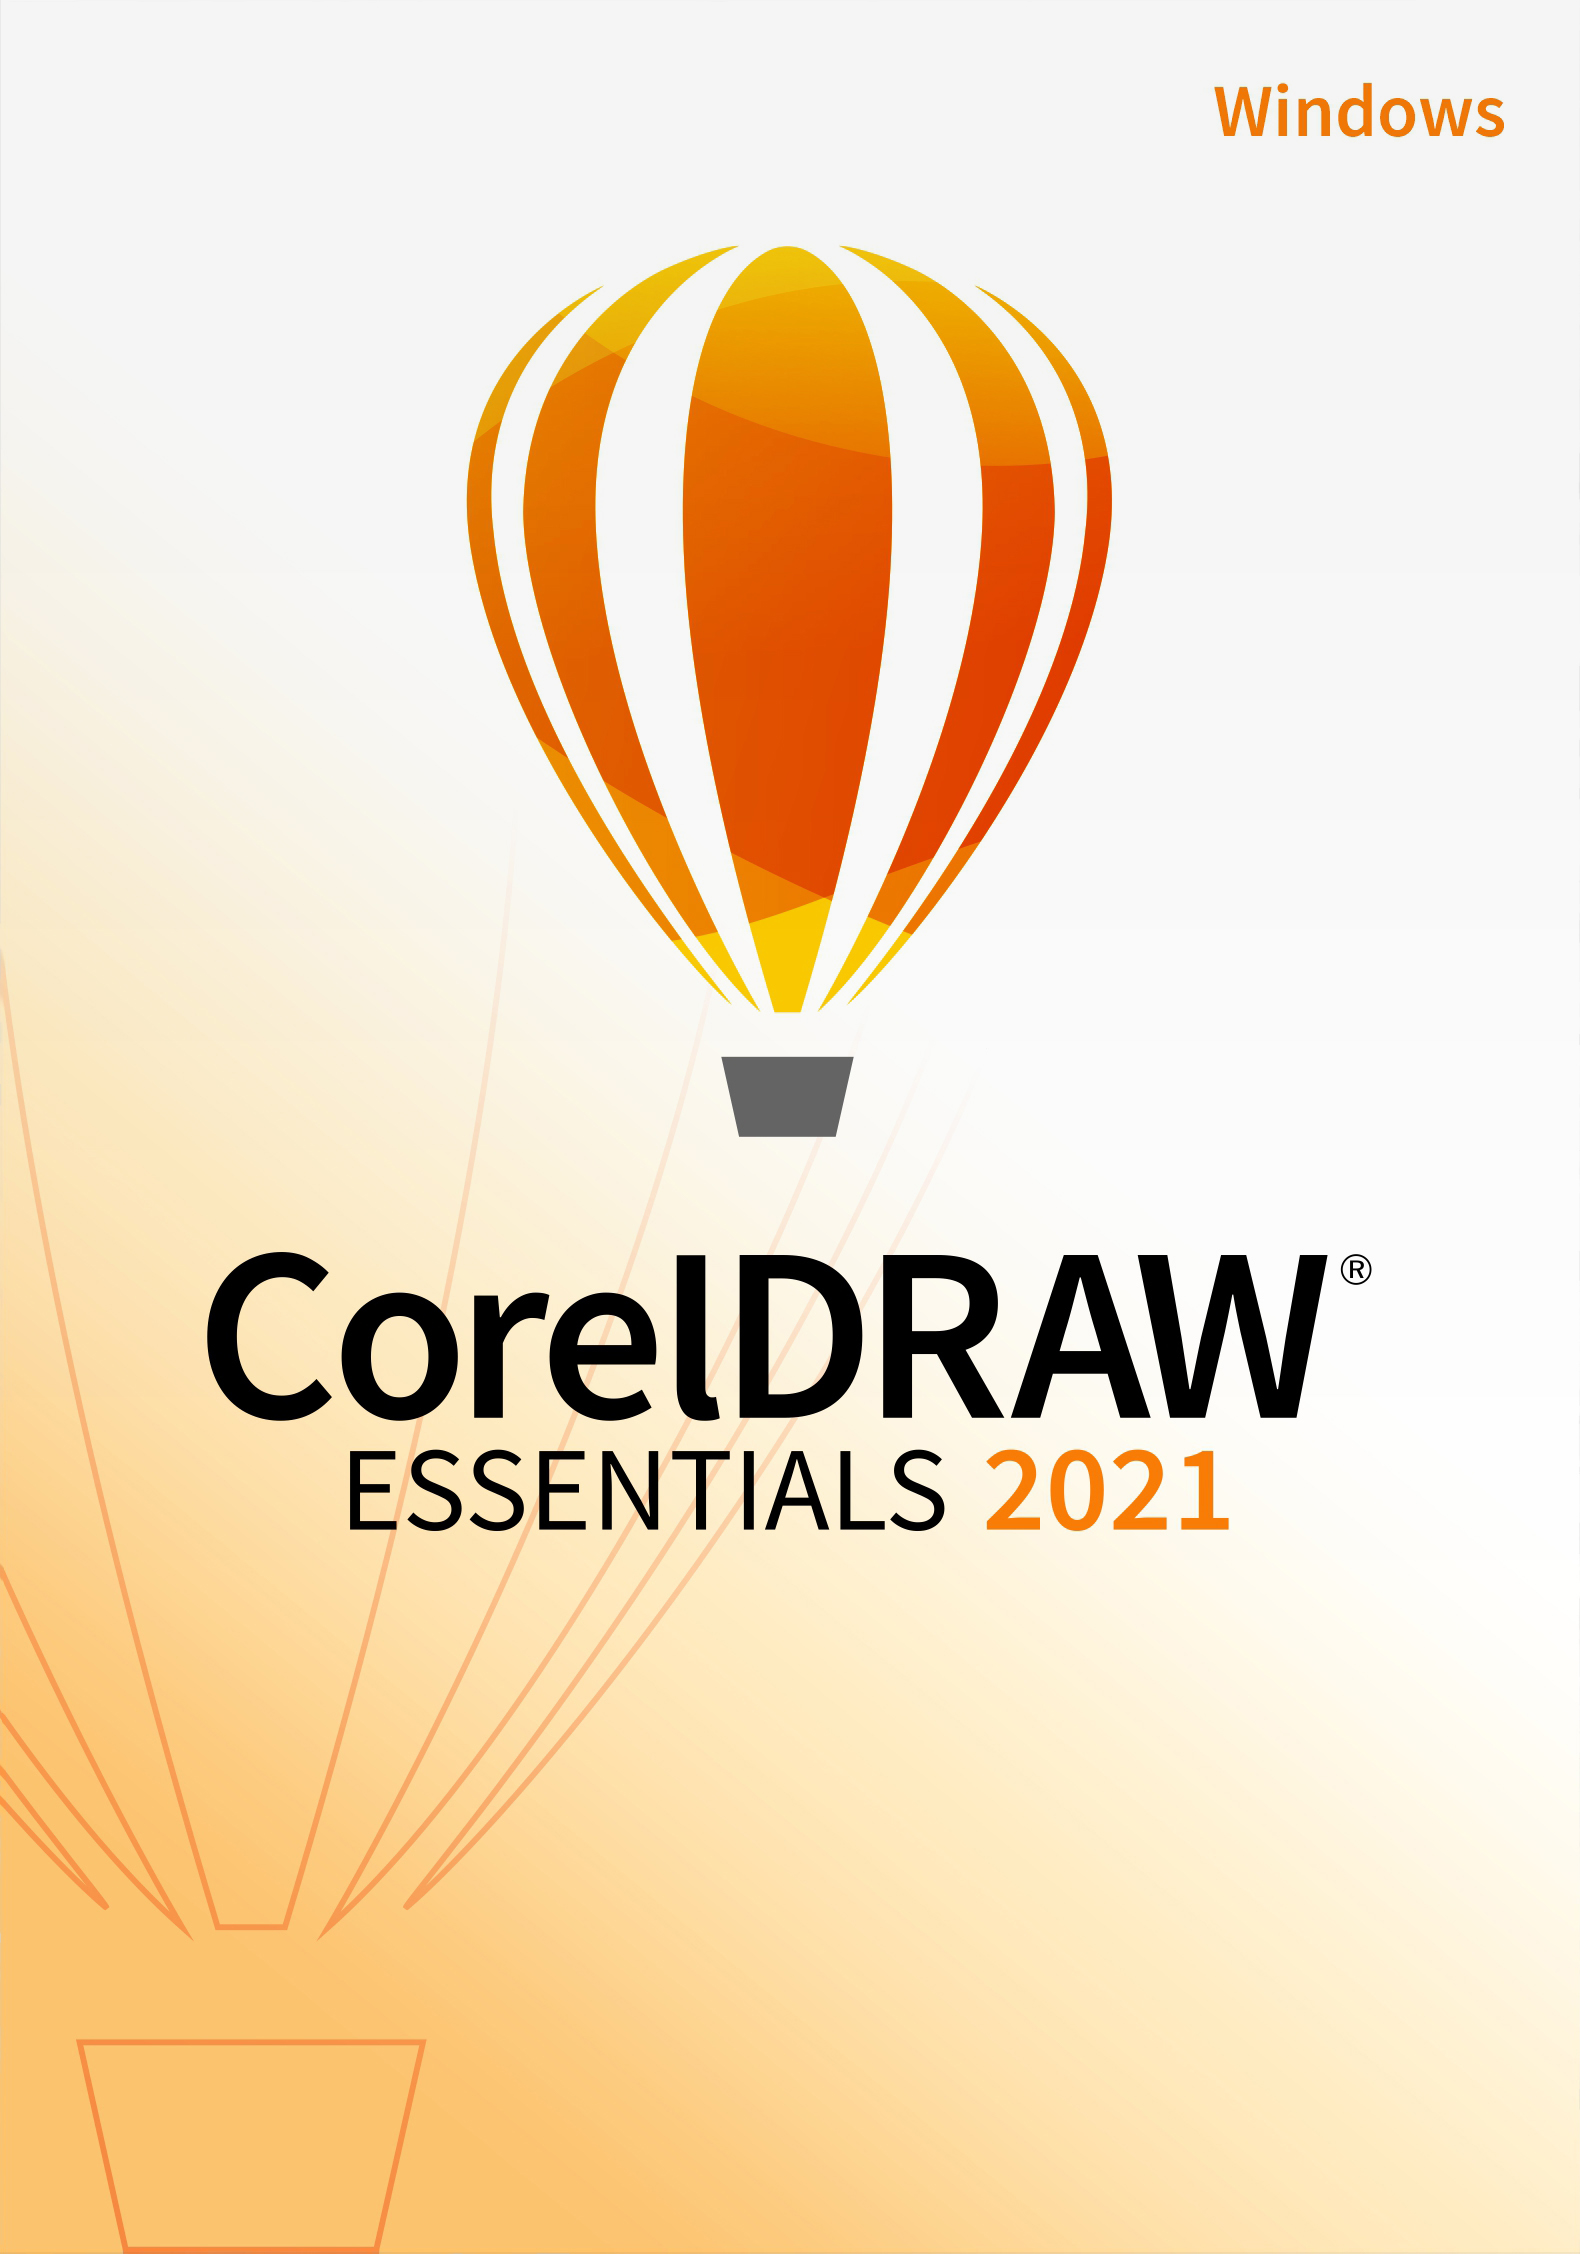 CorelDraw Essentials 2021 - Windows